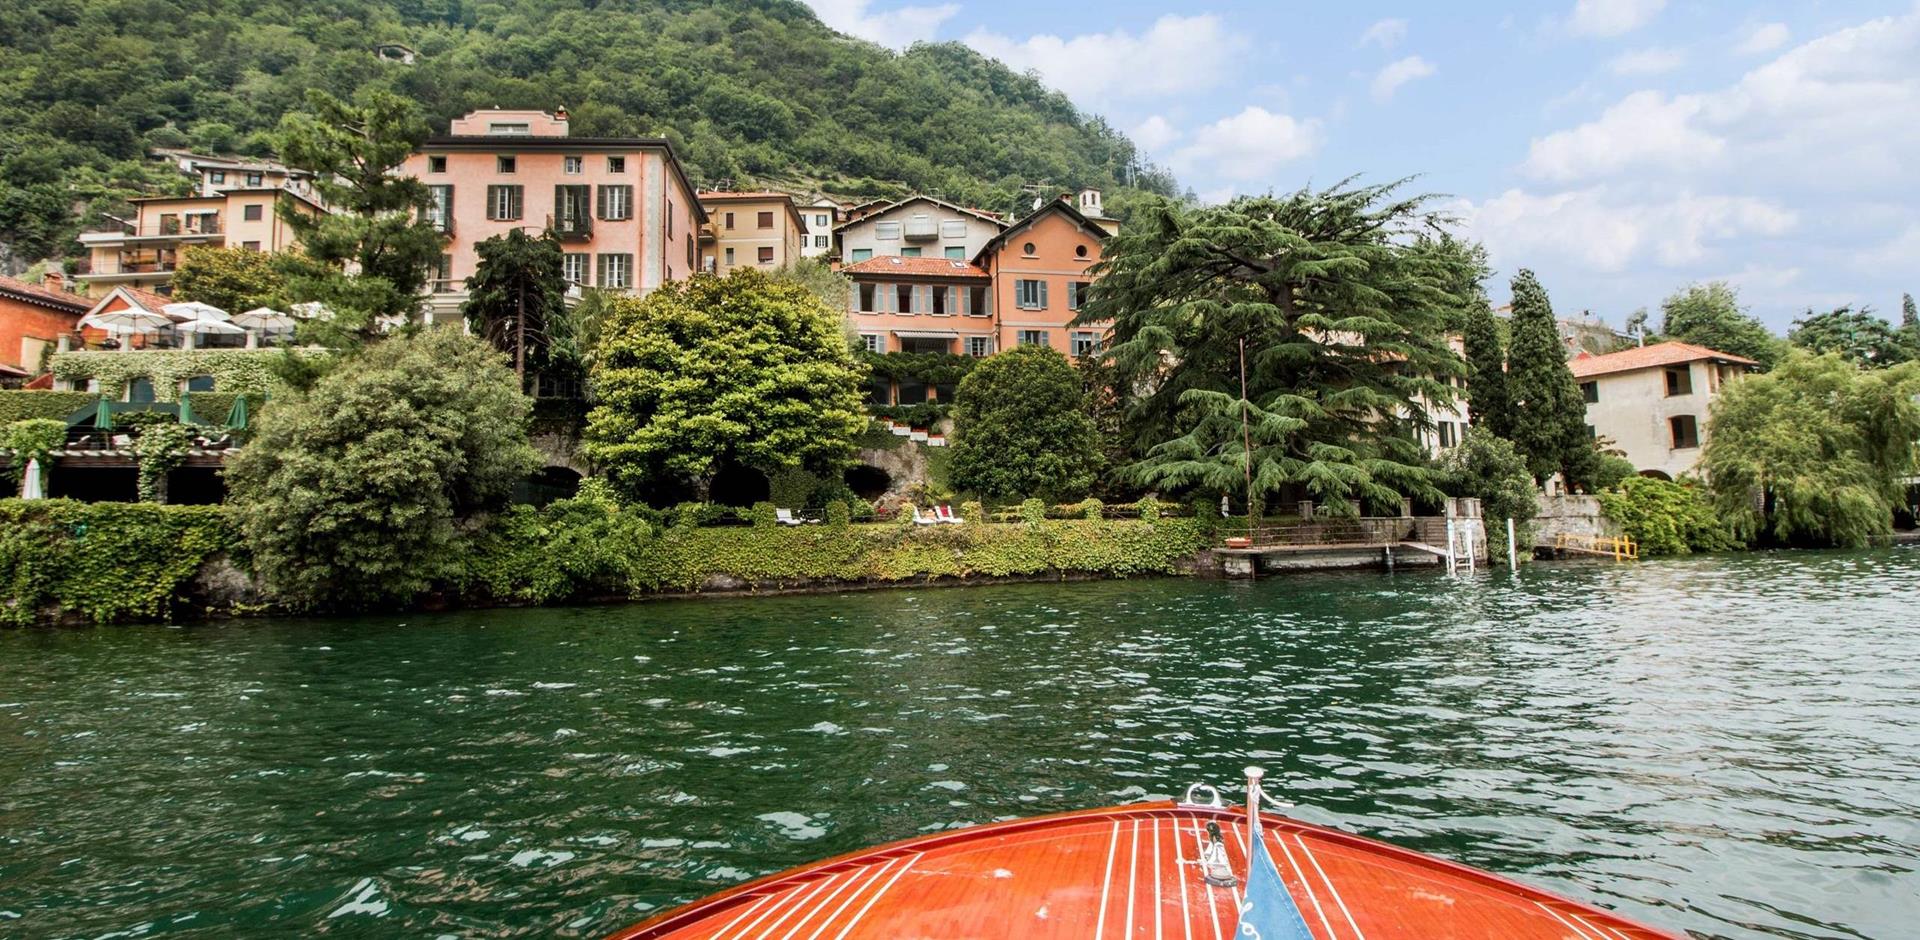 Exterior View, Villa Affaccio, Lake Como